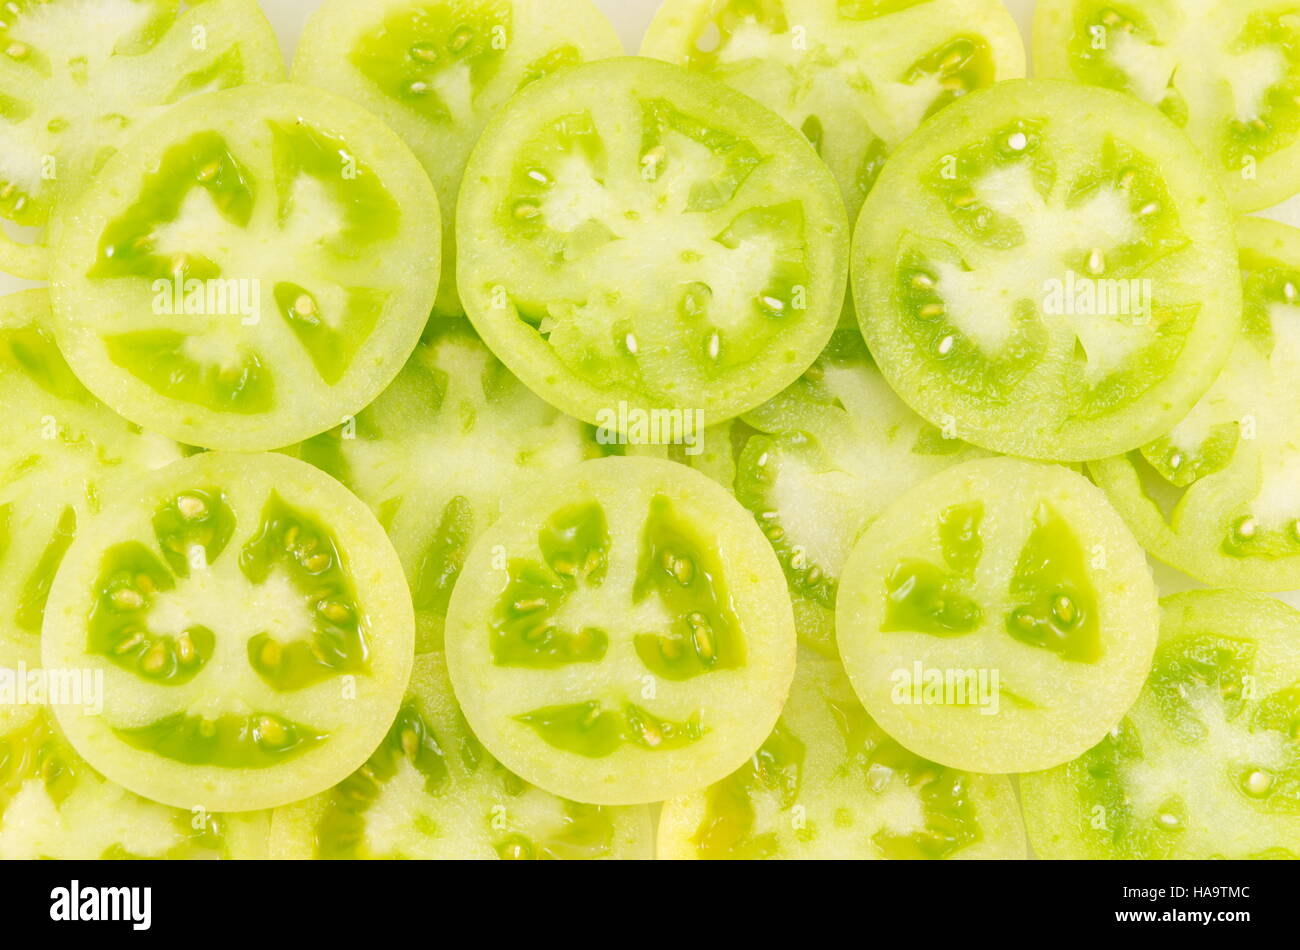 Los tomates verdes cortados en círculos y organizan conjuntamente la próxima a una rodaja de tomate rojo Foto de stock